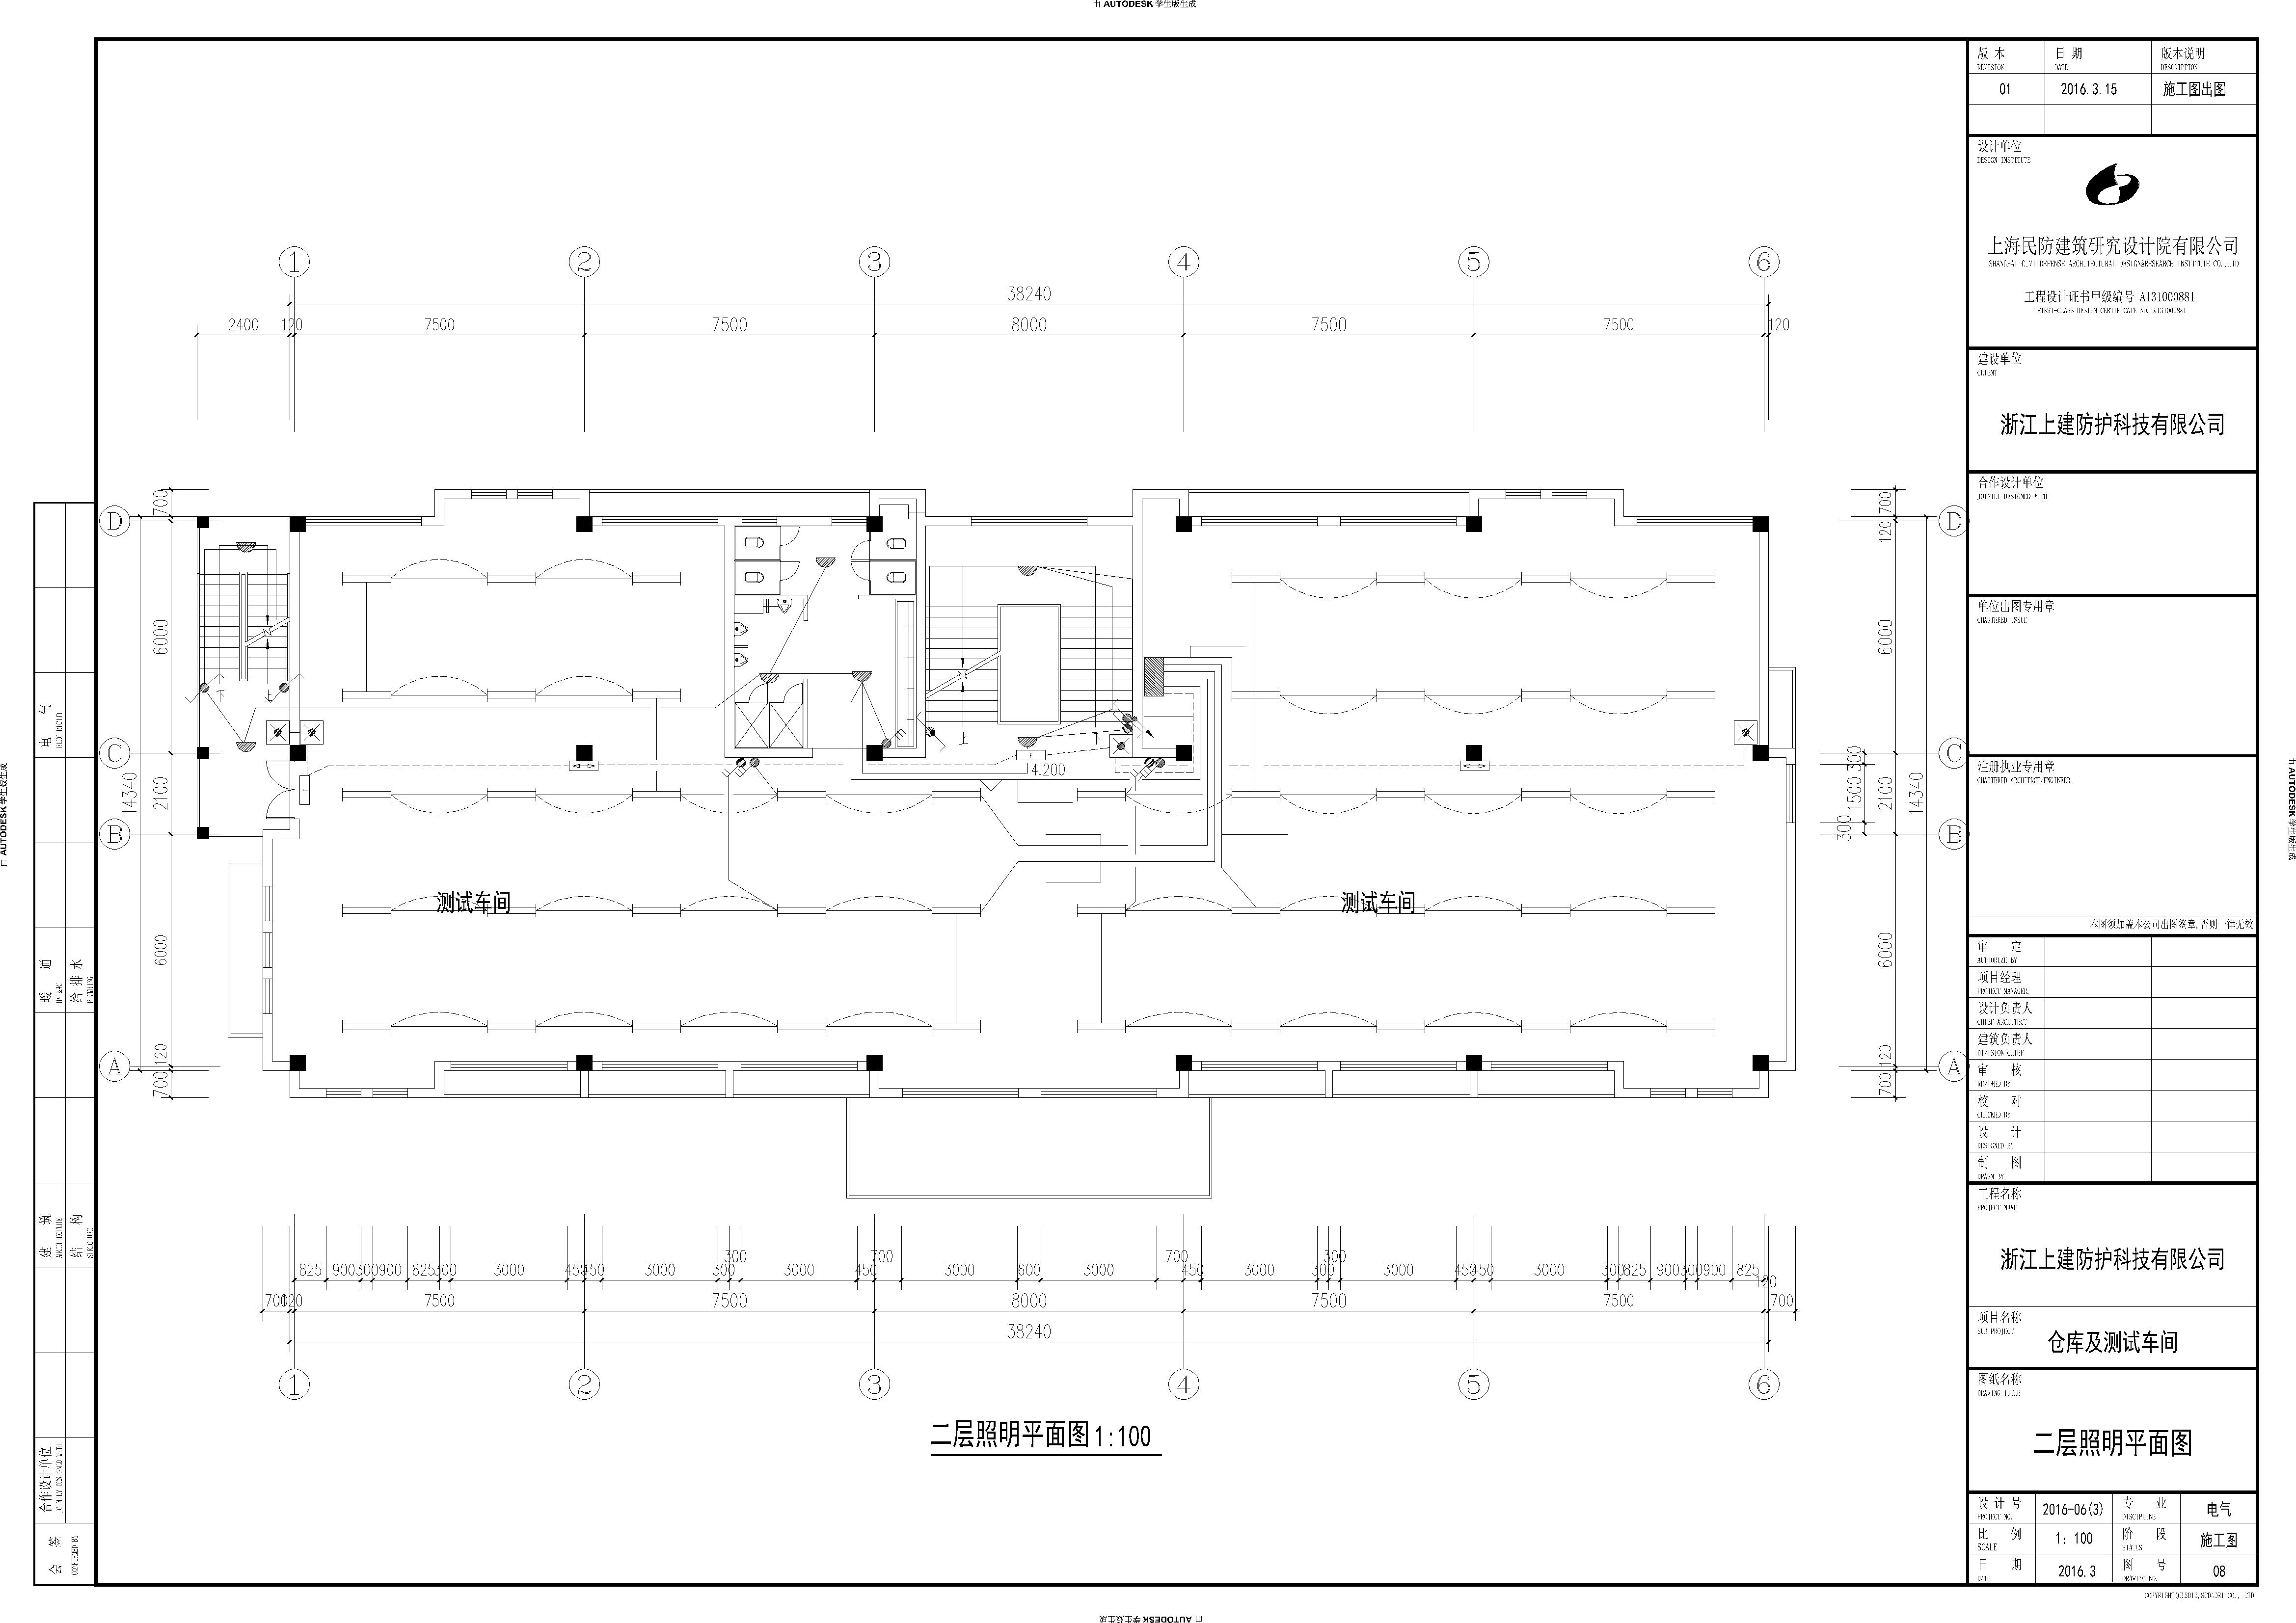 丙类3层仓库及测试车间建筑结构水电设计施工图